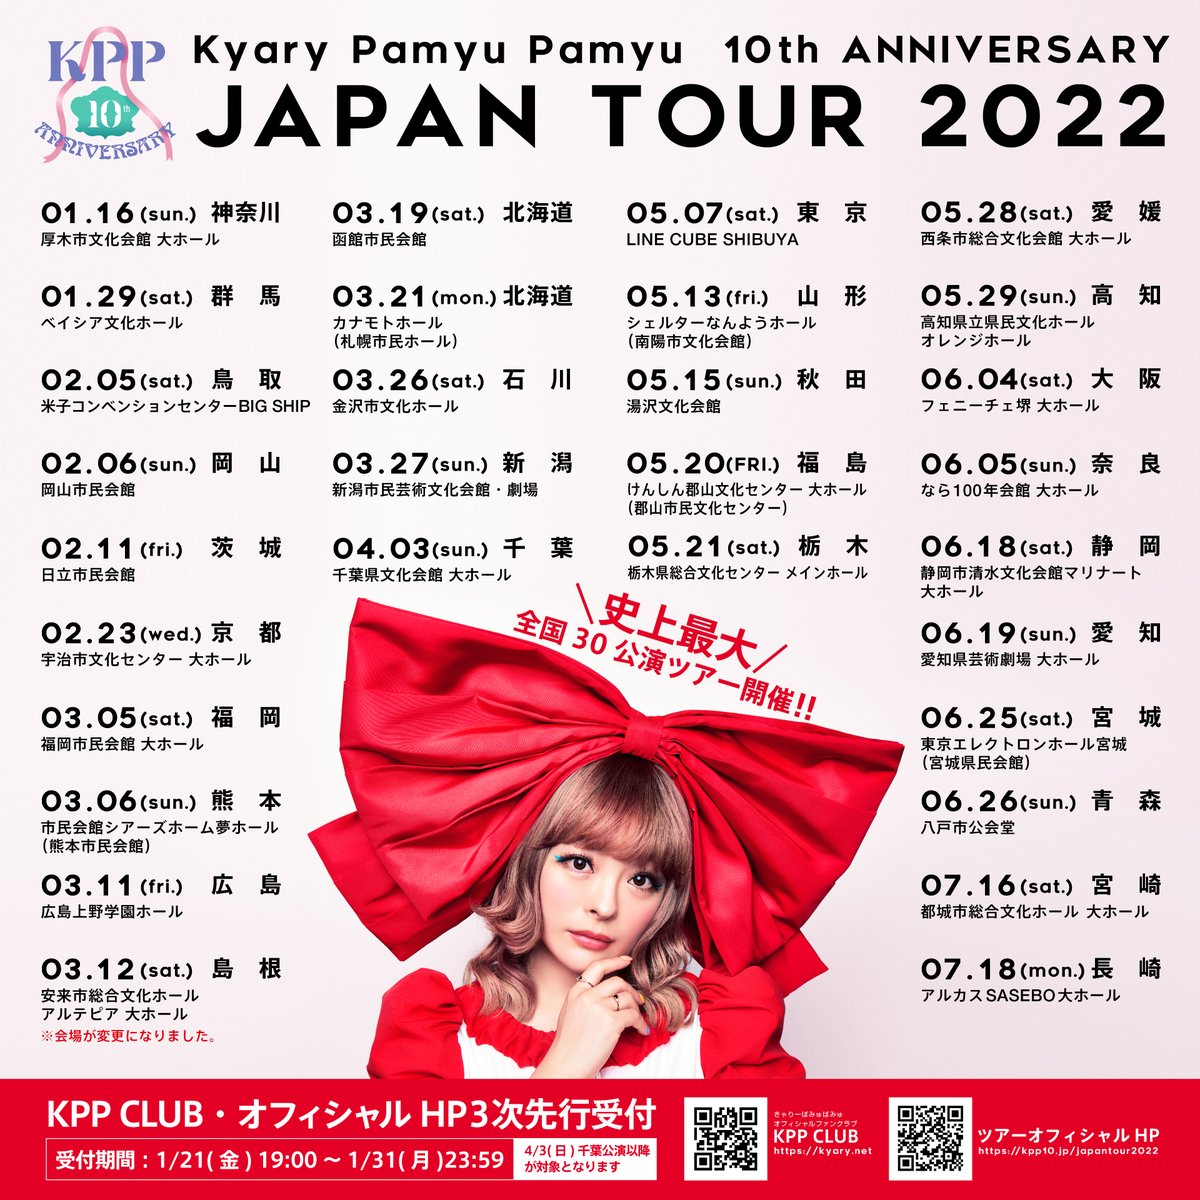 きゃりーぱみゅぱみゅ 10th ANNIVERSARY JAPAN TOUR 2022 CANDY WAVE（栃木県総合文化センター メインホール）